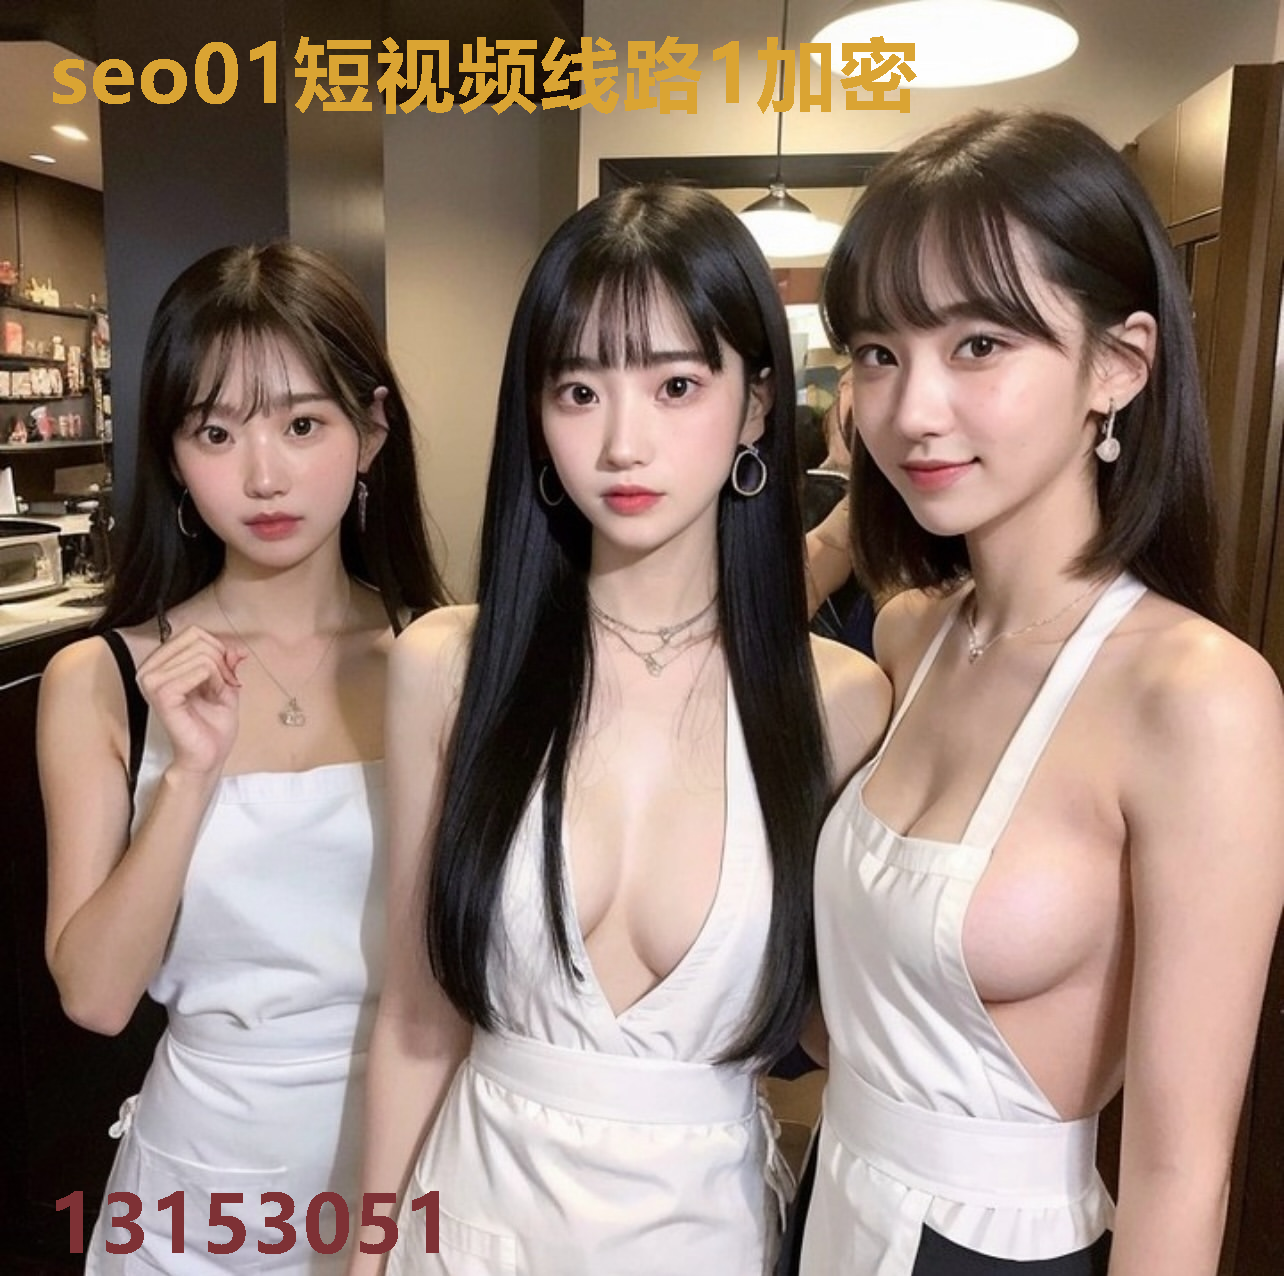 seo01短视频线路1加密